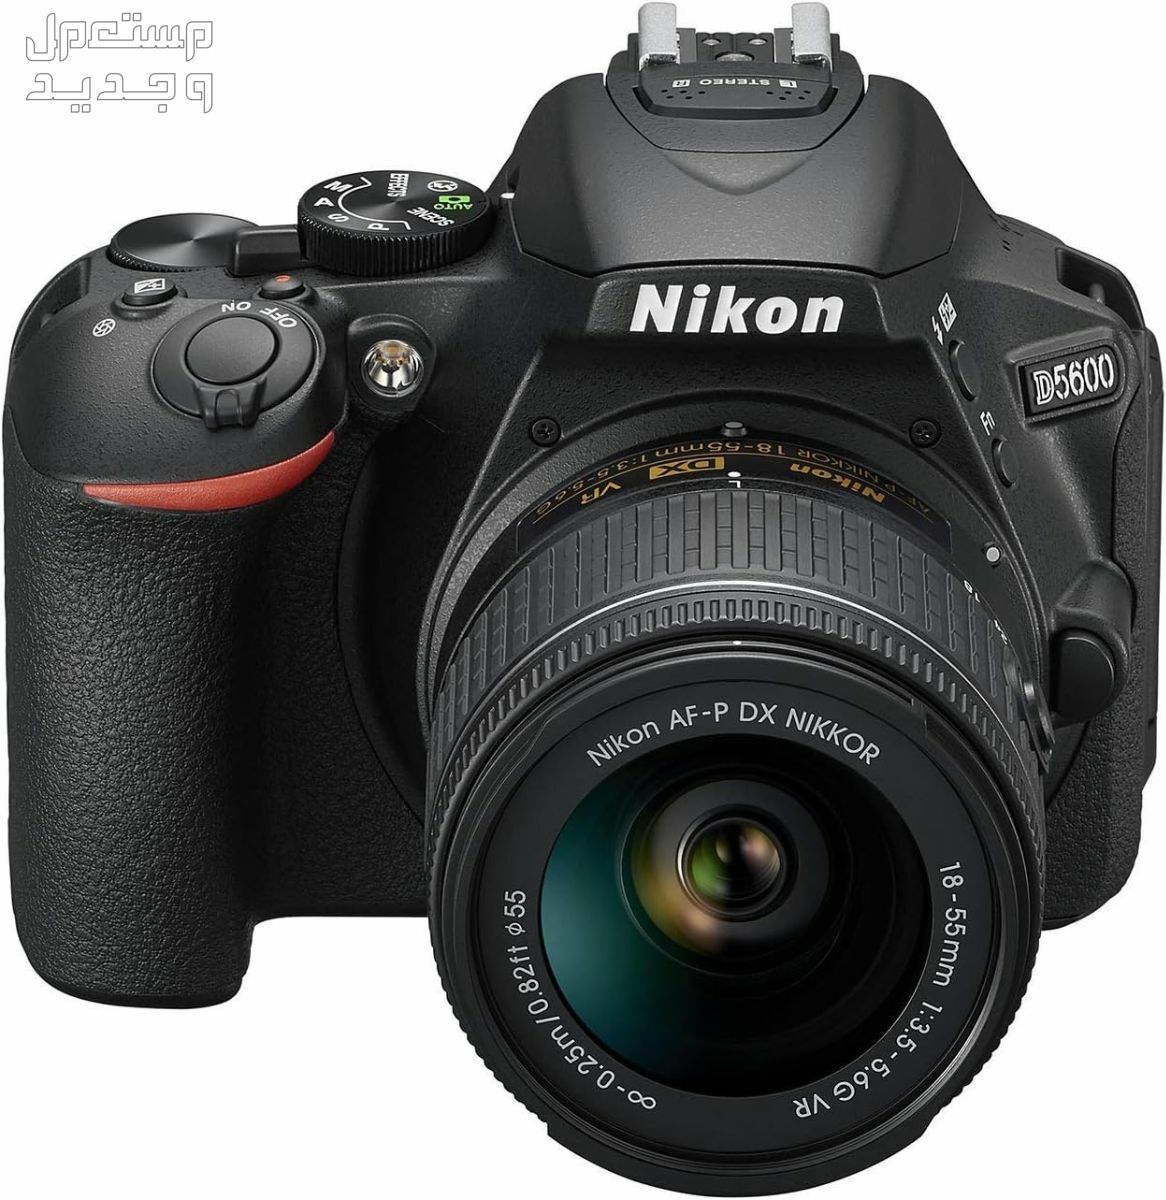 10 كاميرات تصوير ماركات عالمية بأسعار رخيصة سعر كاميرا Nikon D5600